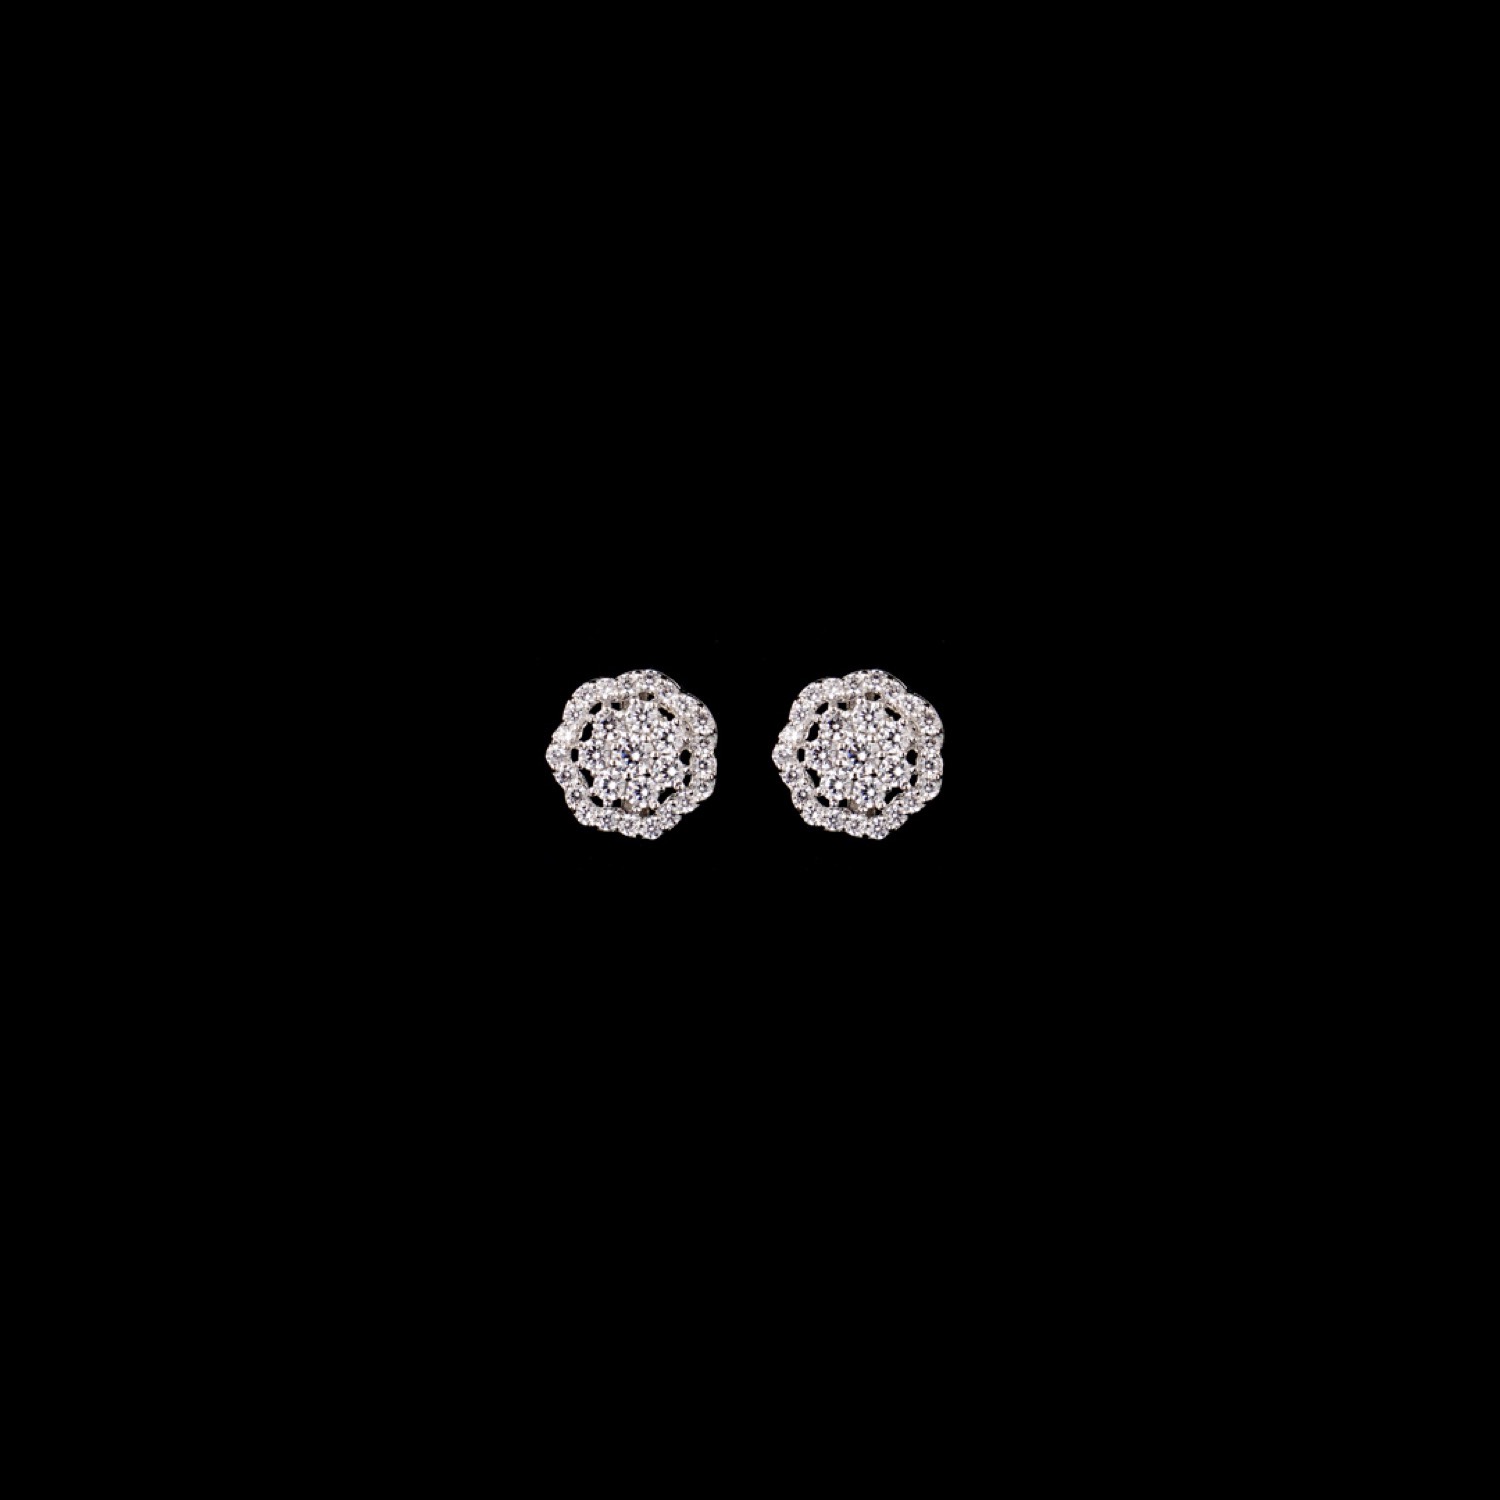 varam_earrings_102022_white_stone_studded_silver_earrings-1